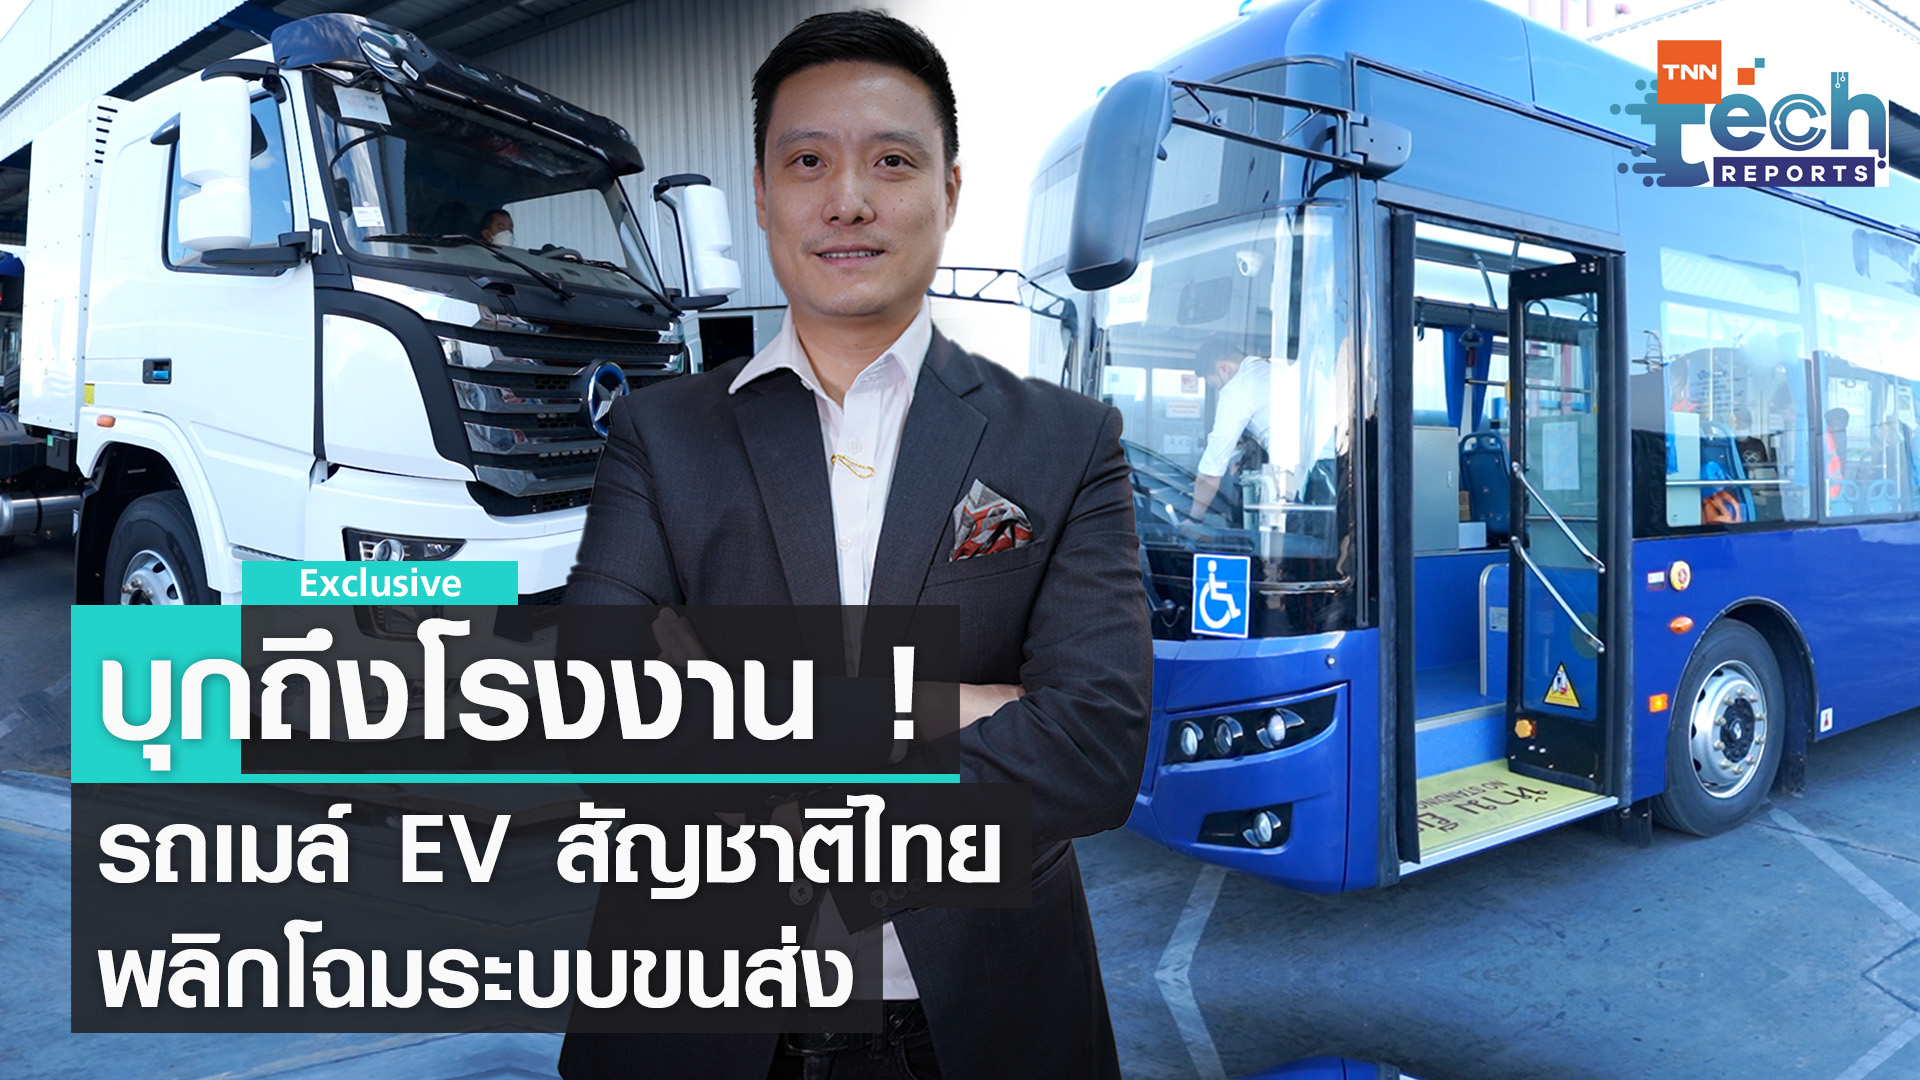 บุกถึงโรงงาน ! รถเมล์-รถหัวลาก EV ฝีมือคนไทย | TNN Tech Reports Weekly